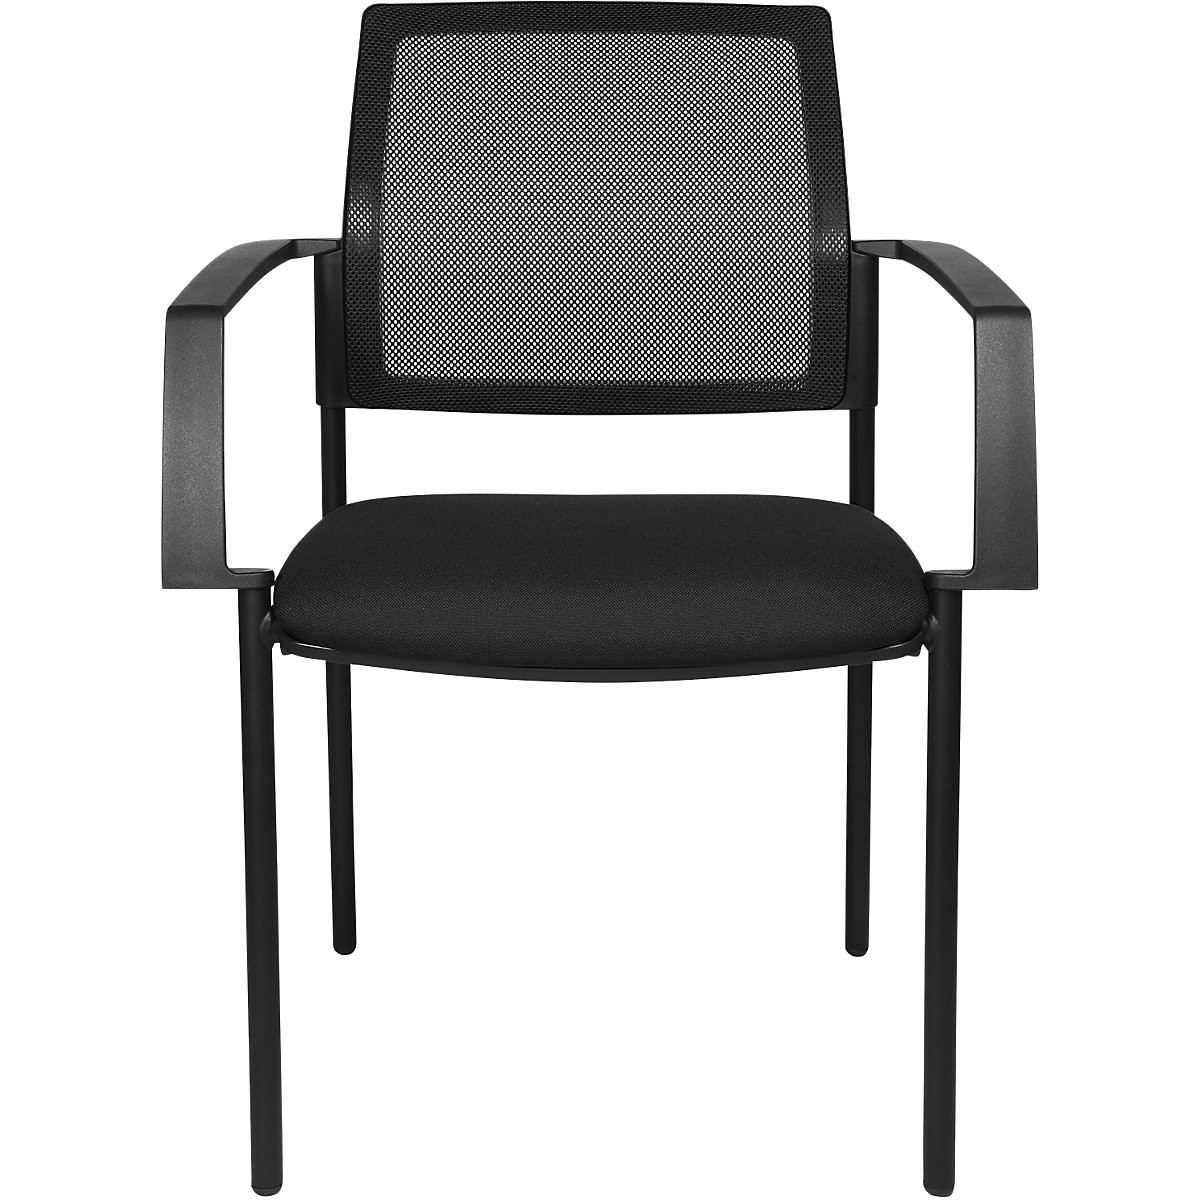 Stohovacia stolička zo sieťoviny – Topstar, so 4 nohami, OJ 2 ks, sedadlo čierna, podstavec čierna-7